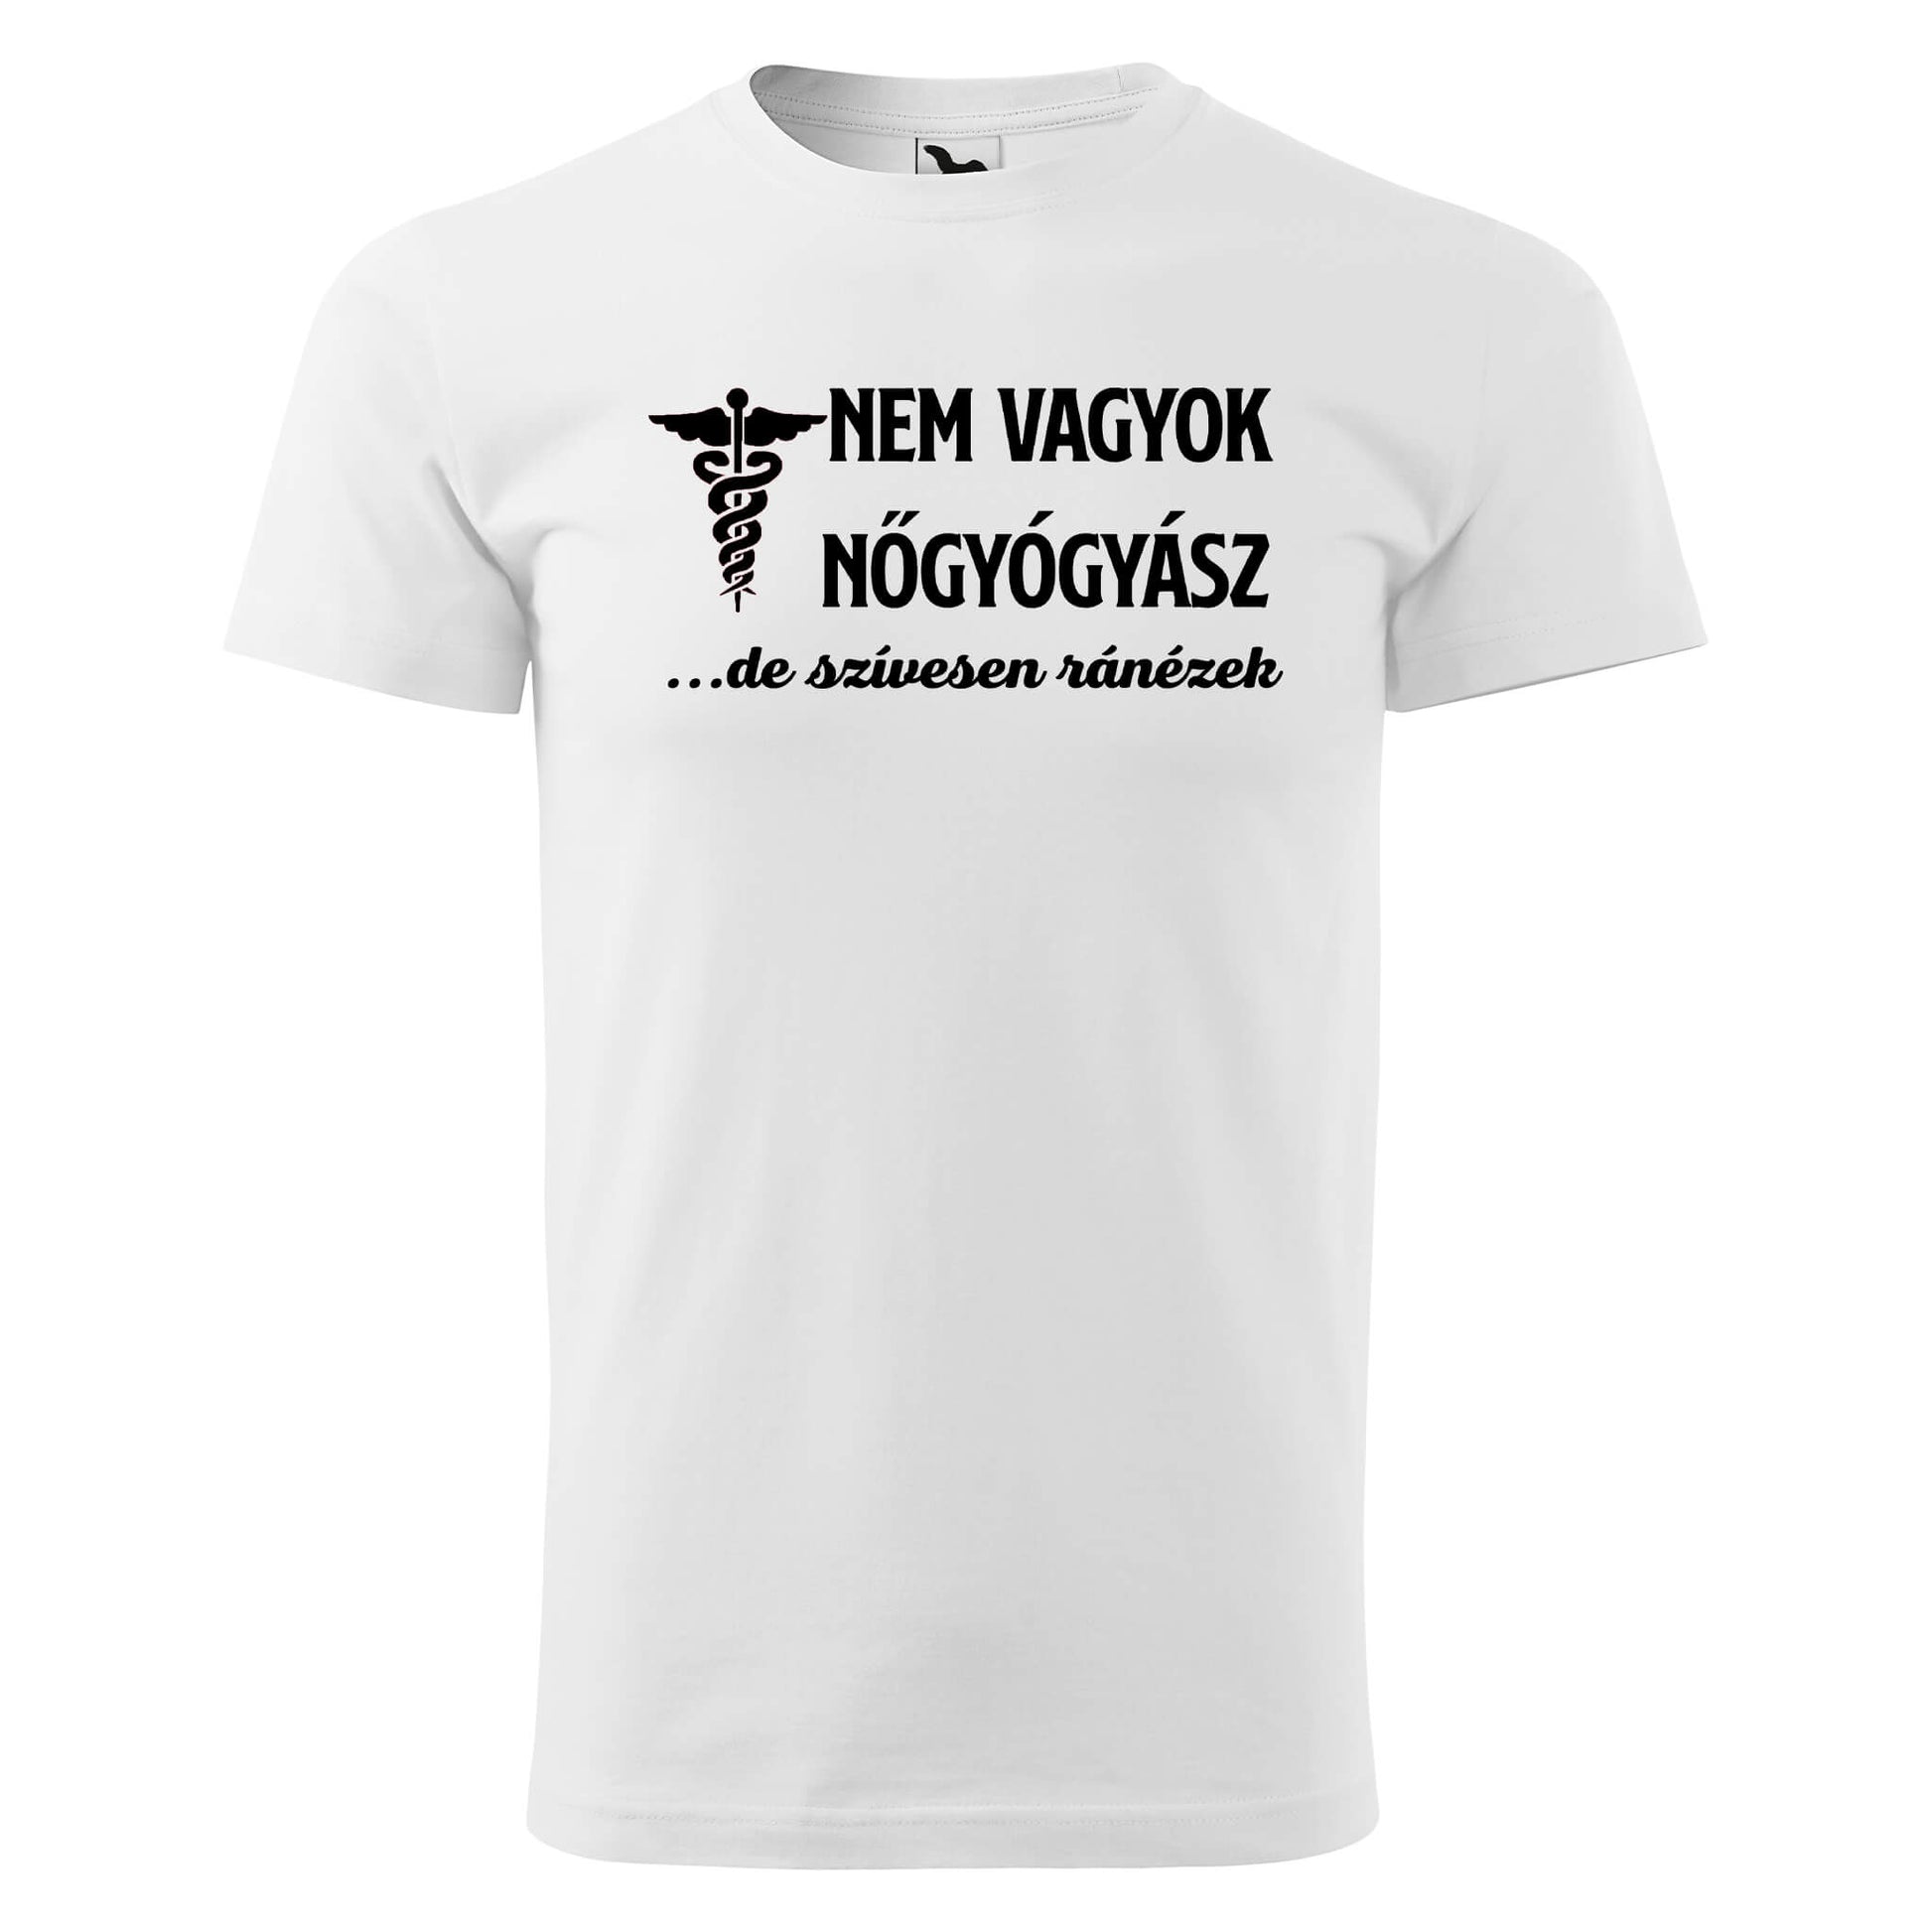 T-shirt - Nem vagyok nőgyógyász - rvdesignprint